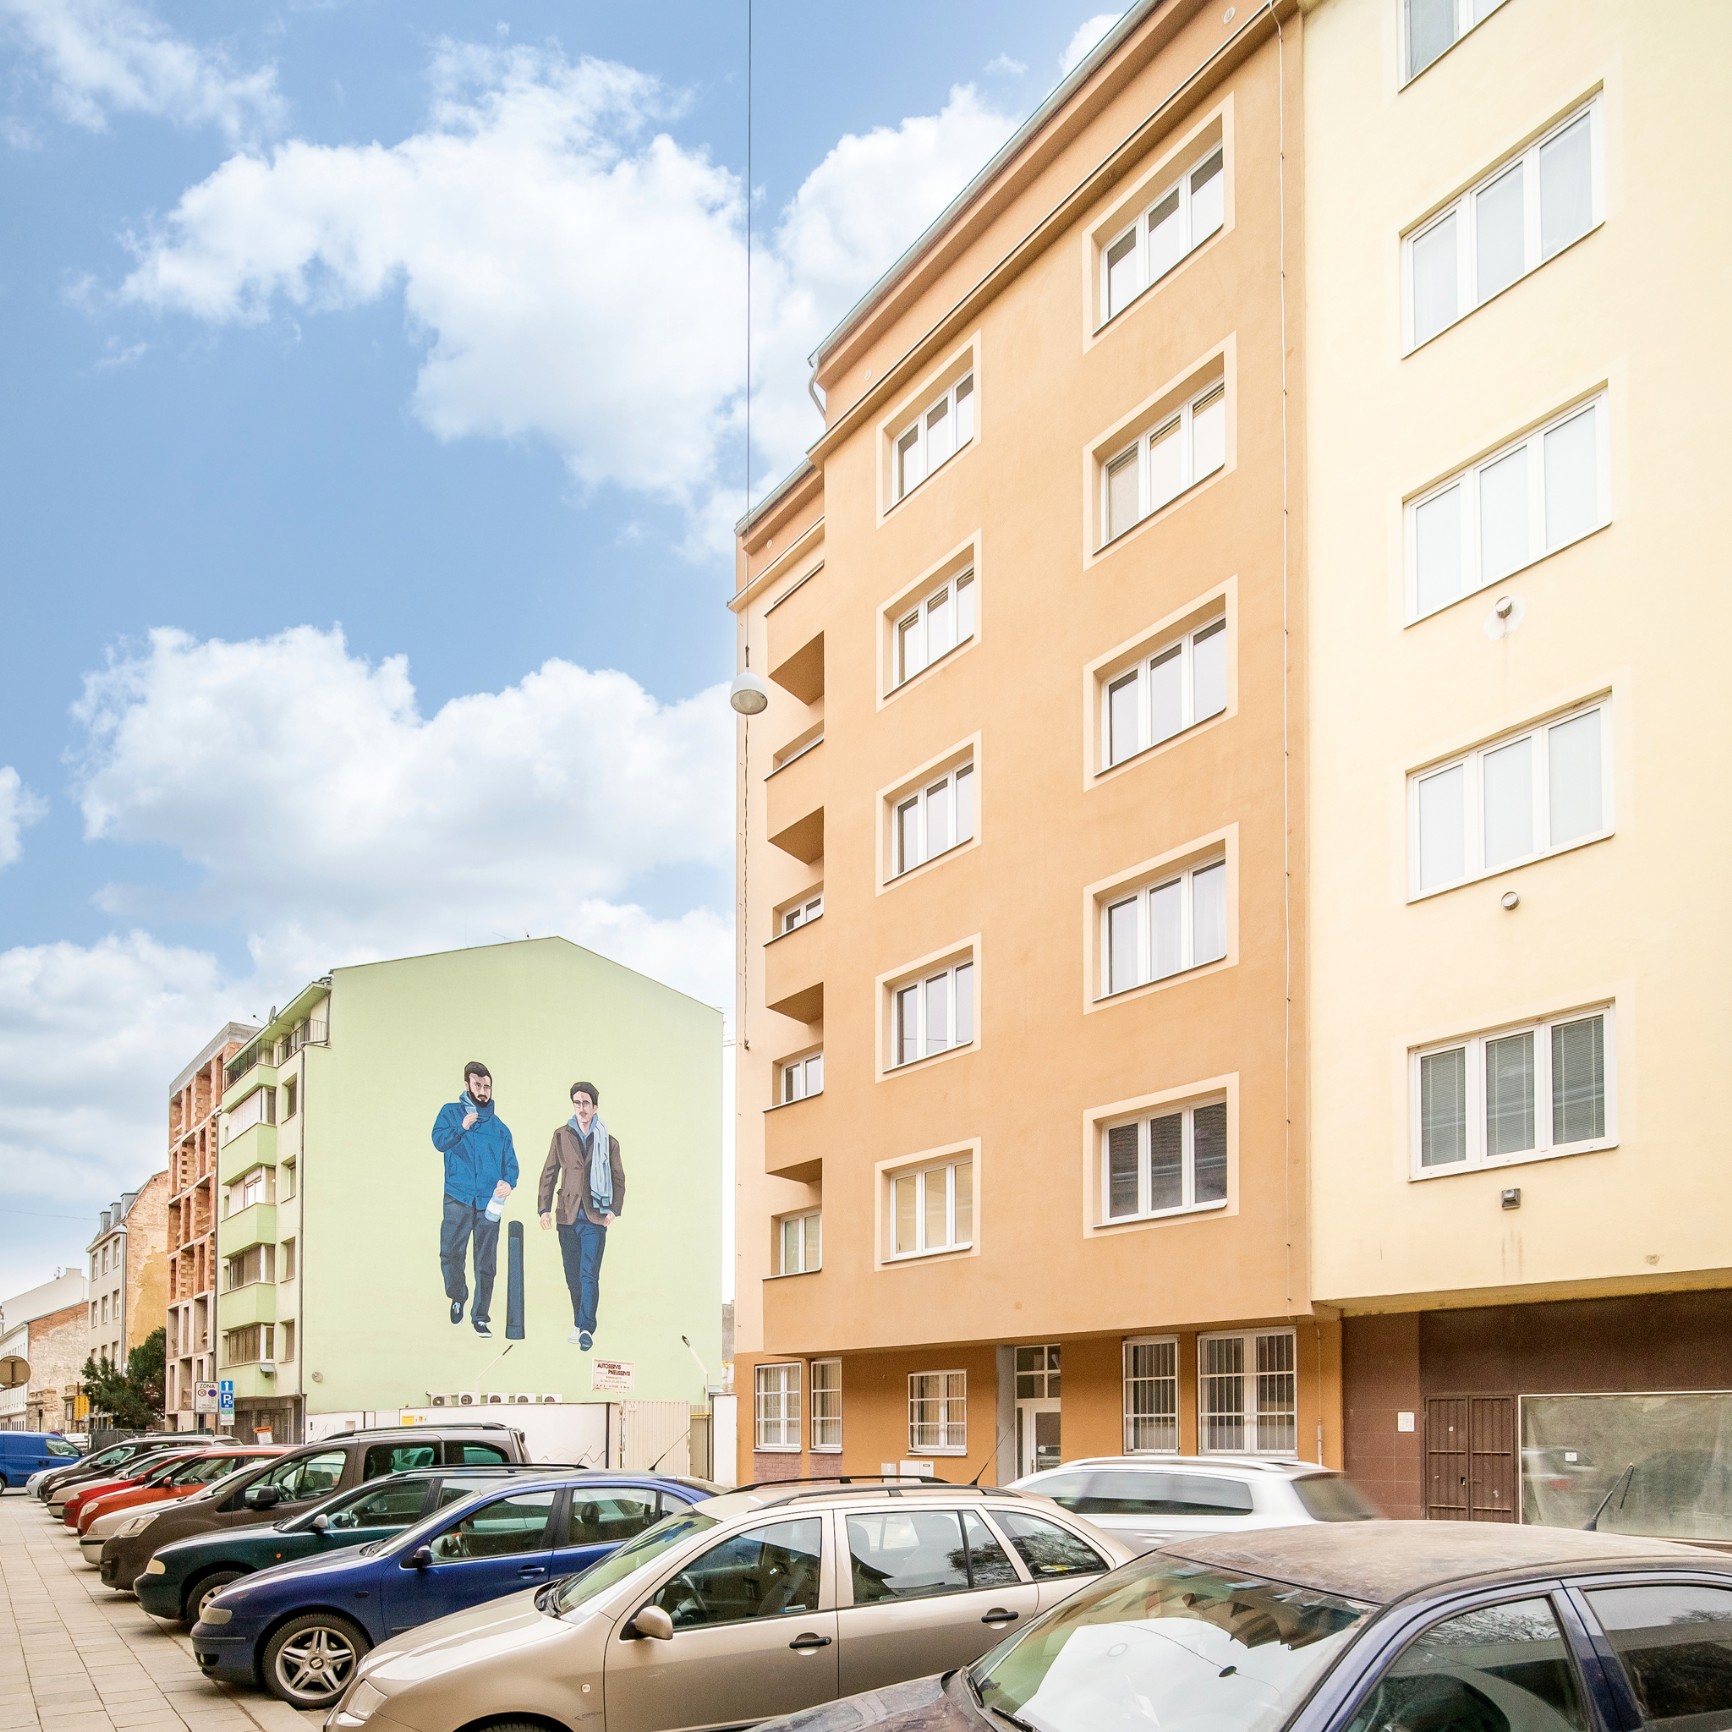 FIDUROCK získal kolaudační rozhodnutí pro bytový dům v Bratislavské ulici v Brně